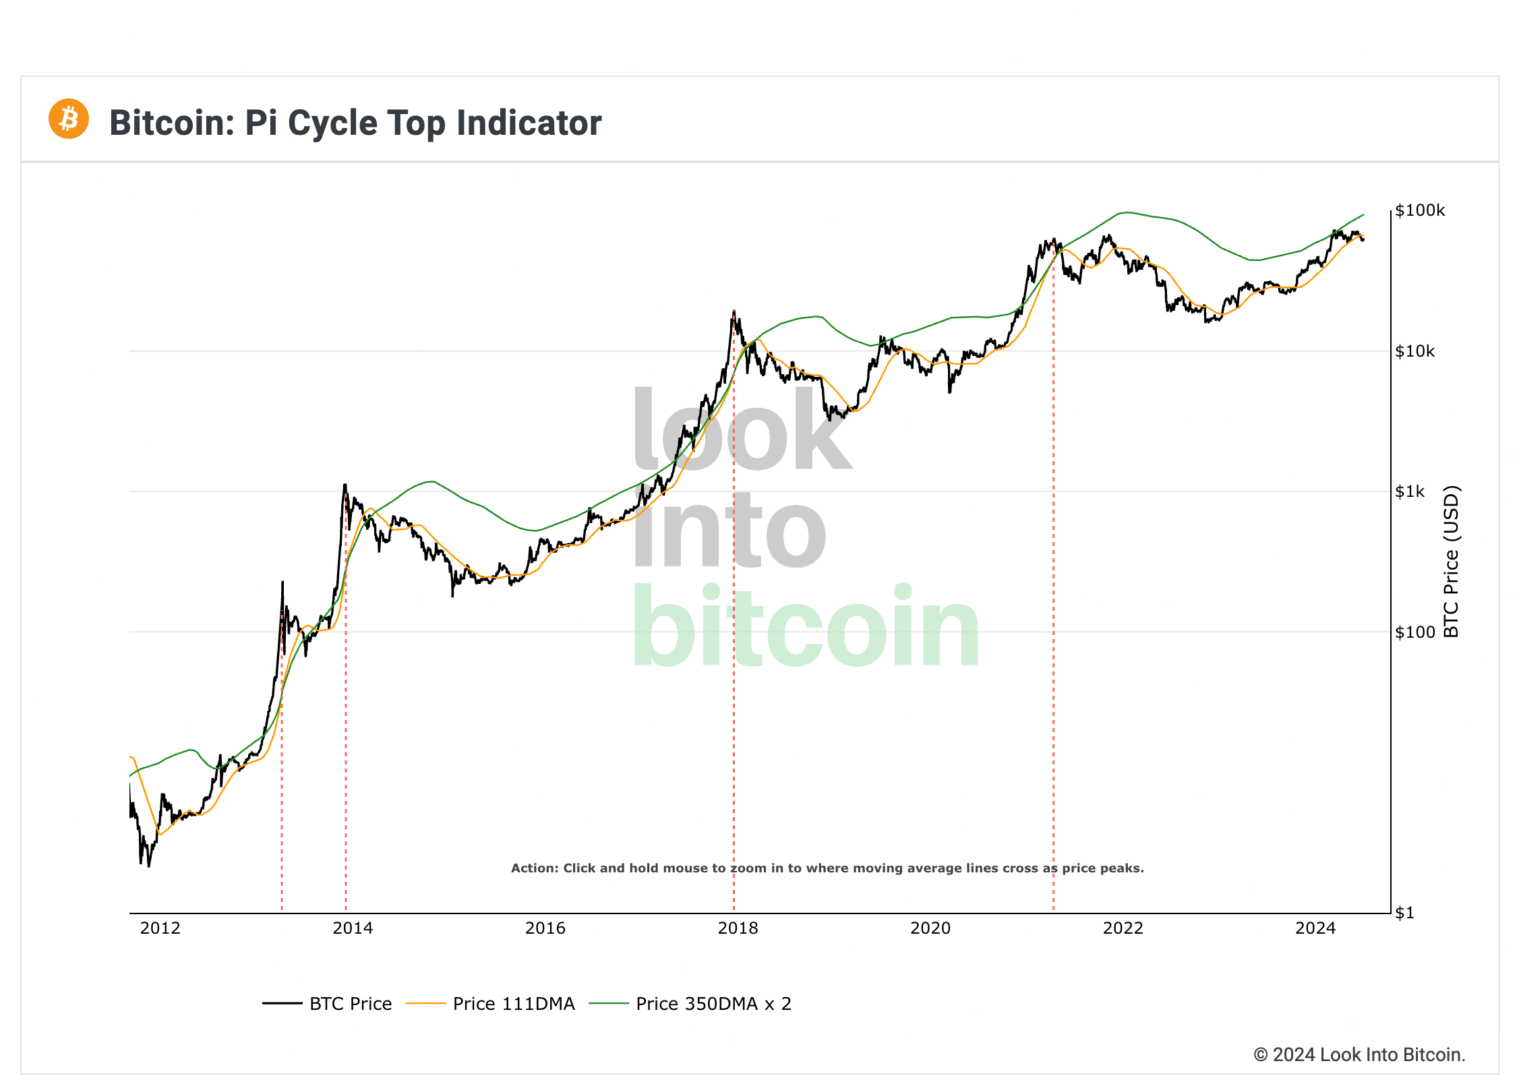 L'indicateur Pi Cycle Top n'indique toujours pas de top de marché sur le Bitcoin et les crypto. 